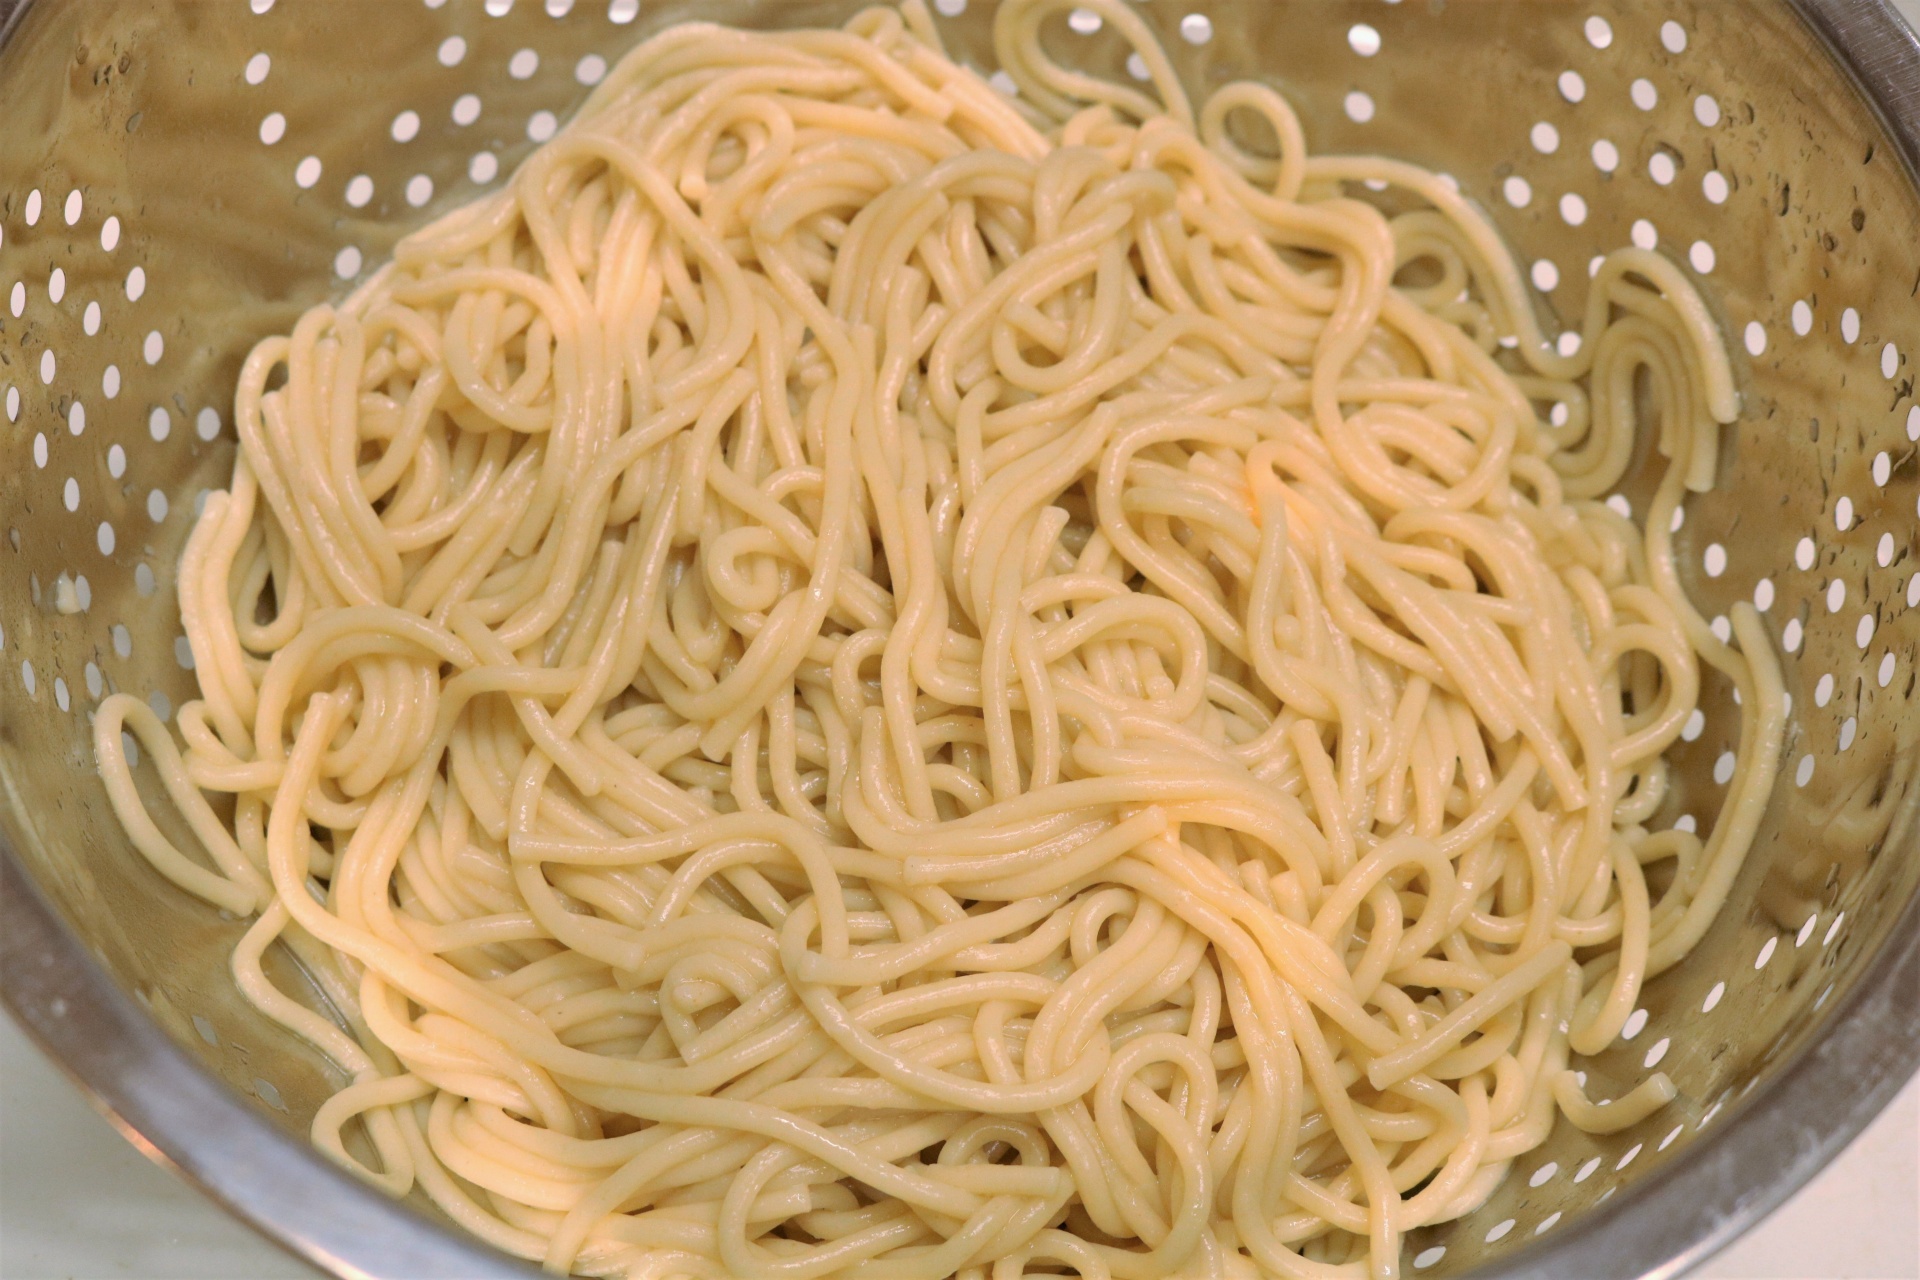 Спагетти вареные